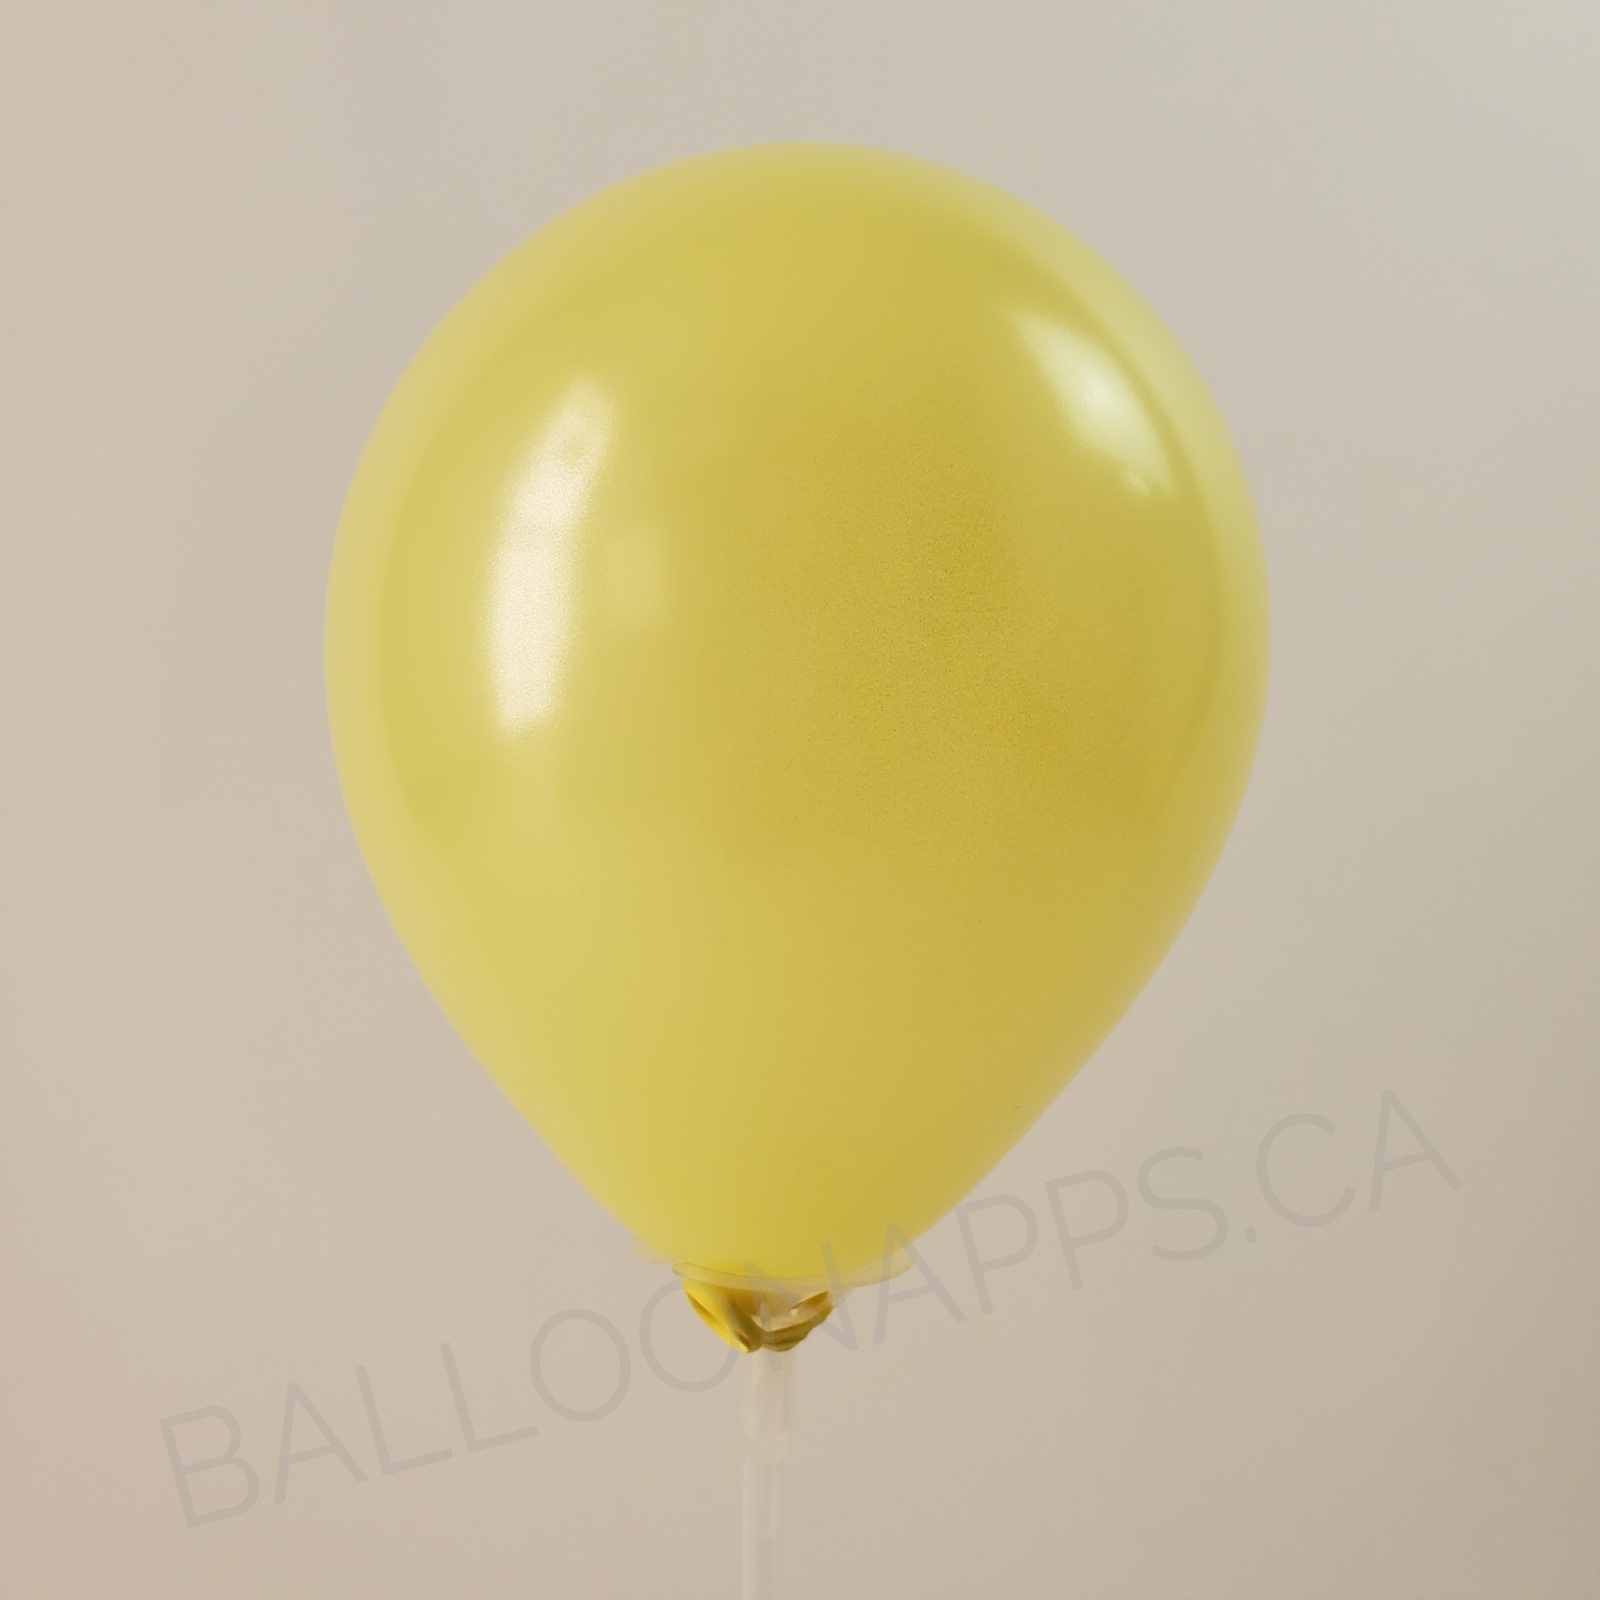 balloon texture Q (2) 30